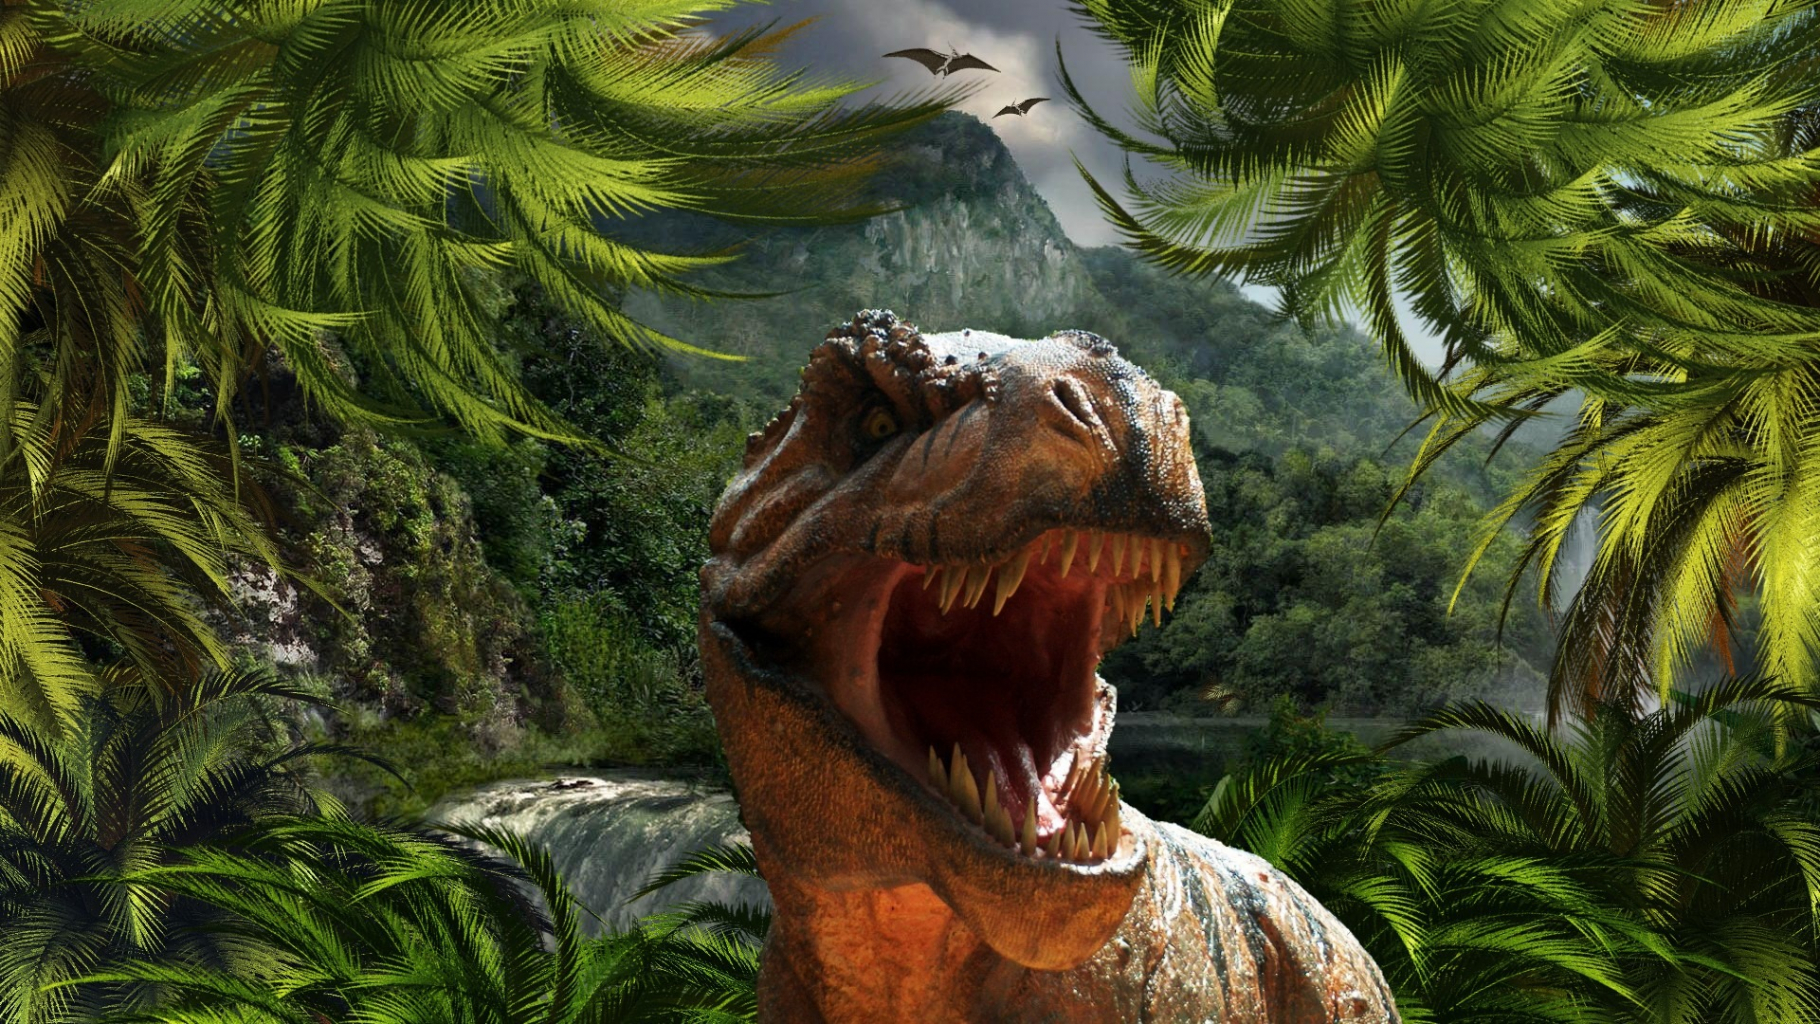 A világ leglátogatottabb kiállításai: ezekben a tárlatokban nem fogsz csalódni - 4. rész A Jurassic Park életre kel